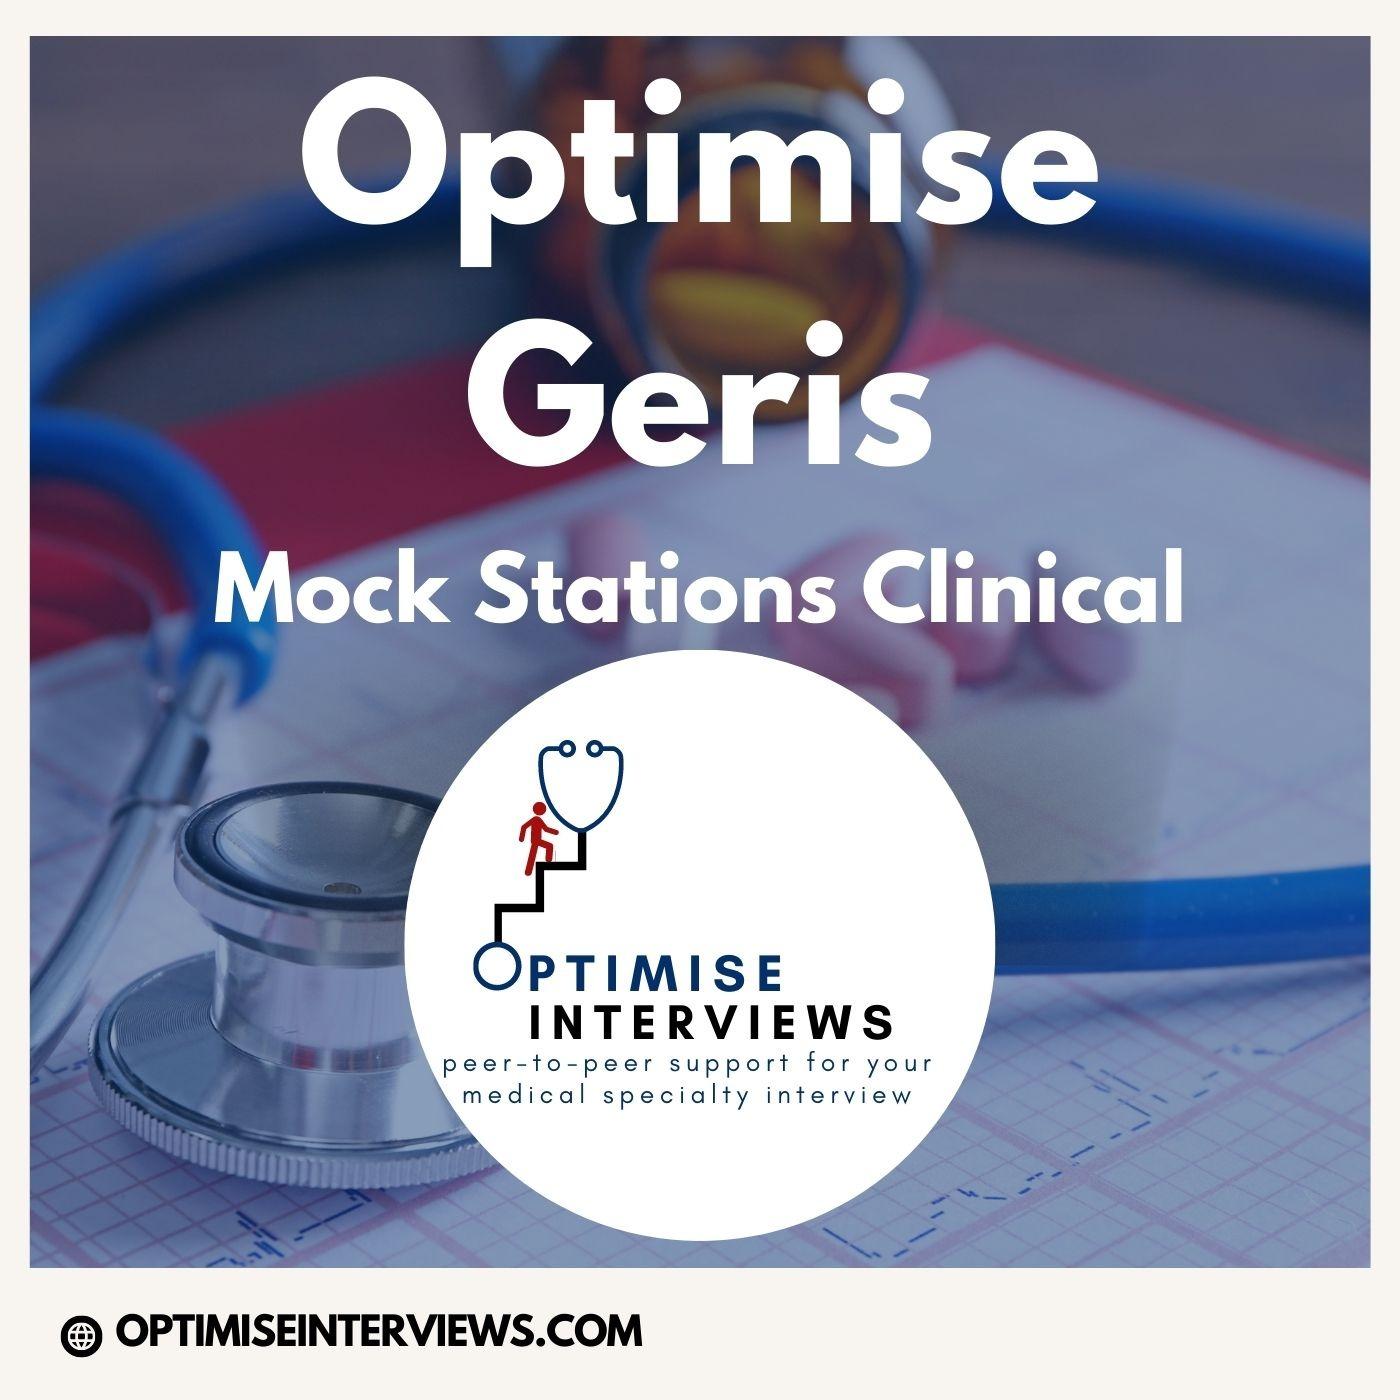 OptimiseGeris - Mock Station Clinical